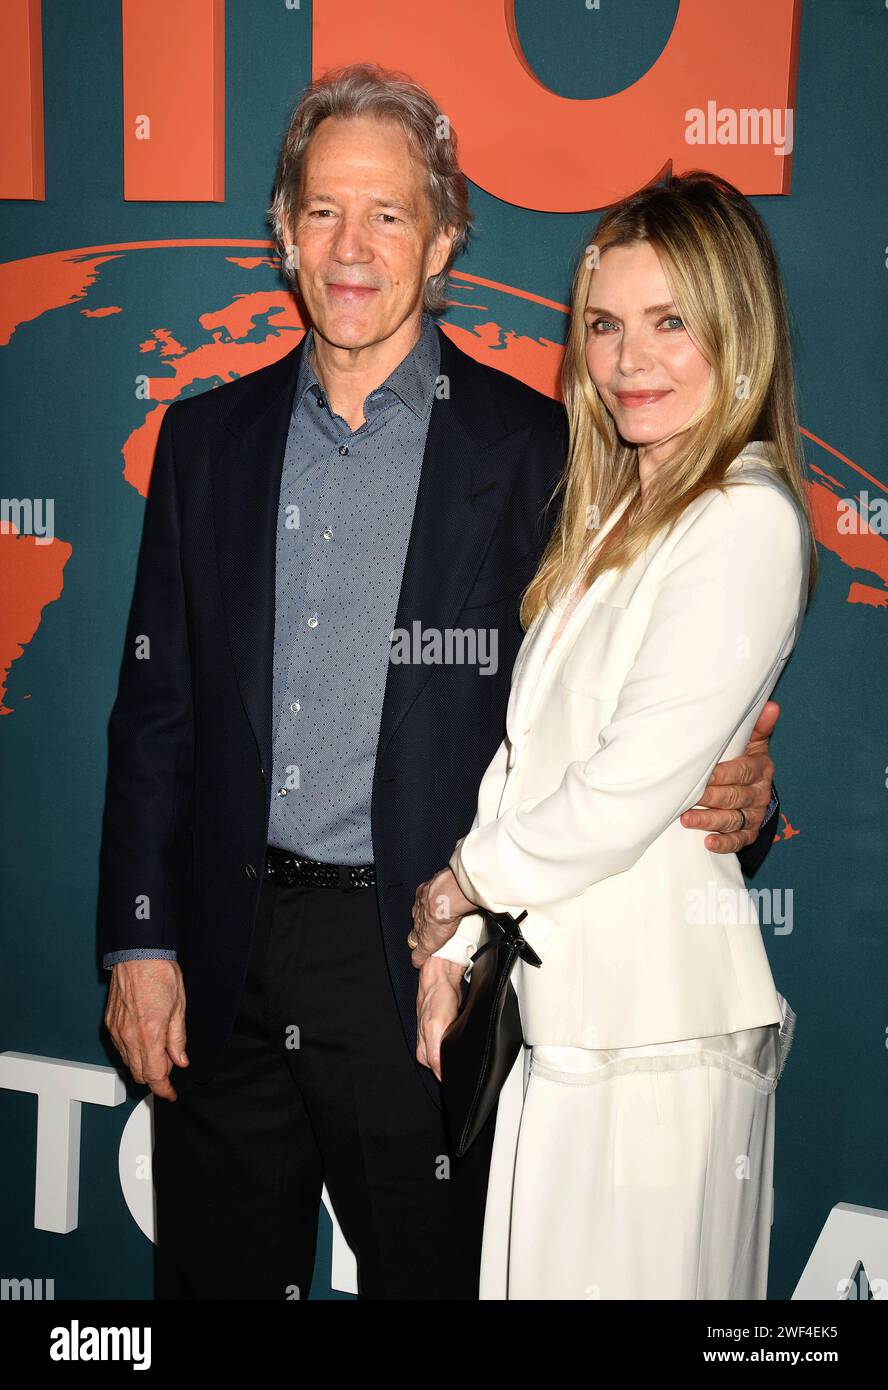 LOS ANGELES, KALIFORNIEN - 27. JANUAR: (L-R) David E. Kelley und Michelle Pfeiffer nehmen an der 33. Jährlichen EMA Awards Gala zu Ehren von Laura Dern, Sponsore, Teil Stockfoto